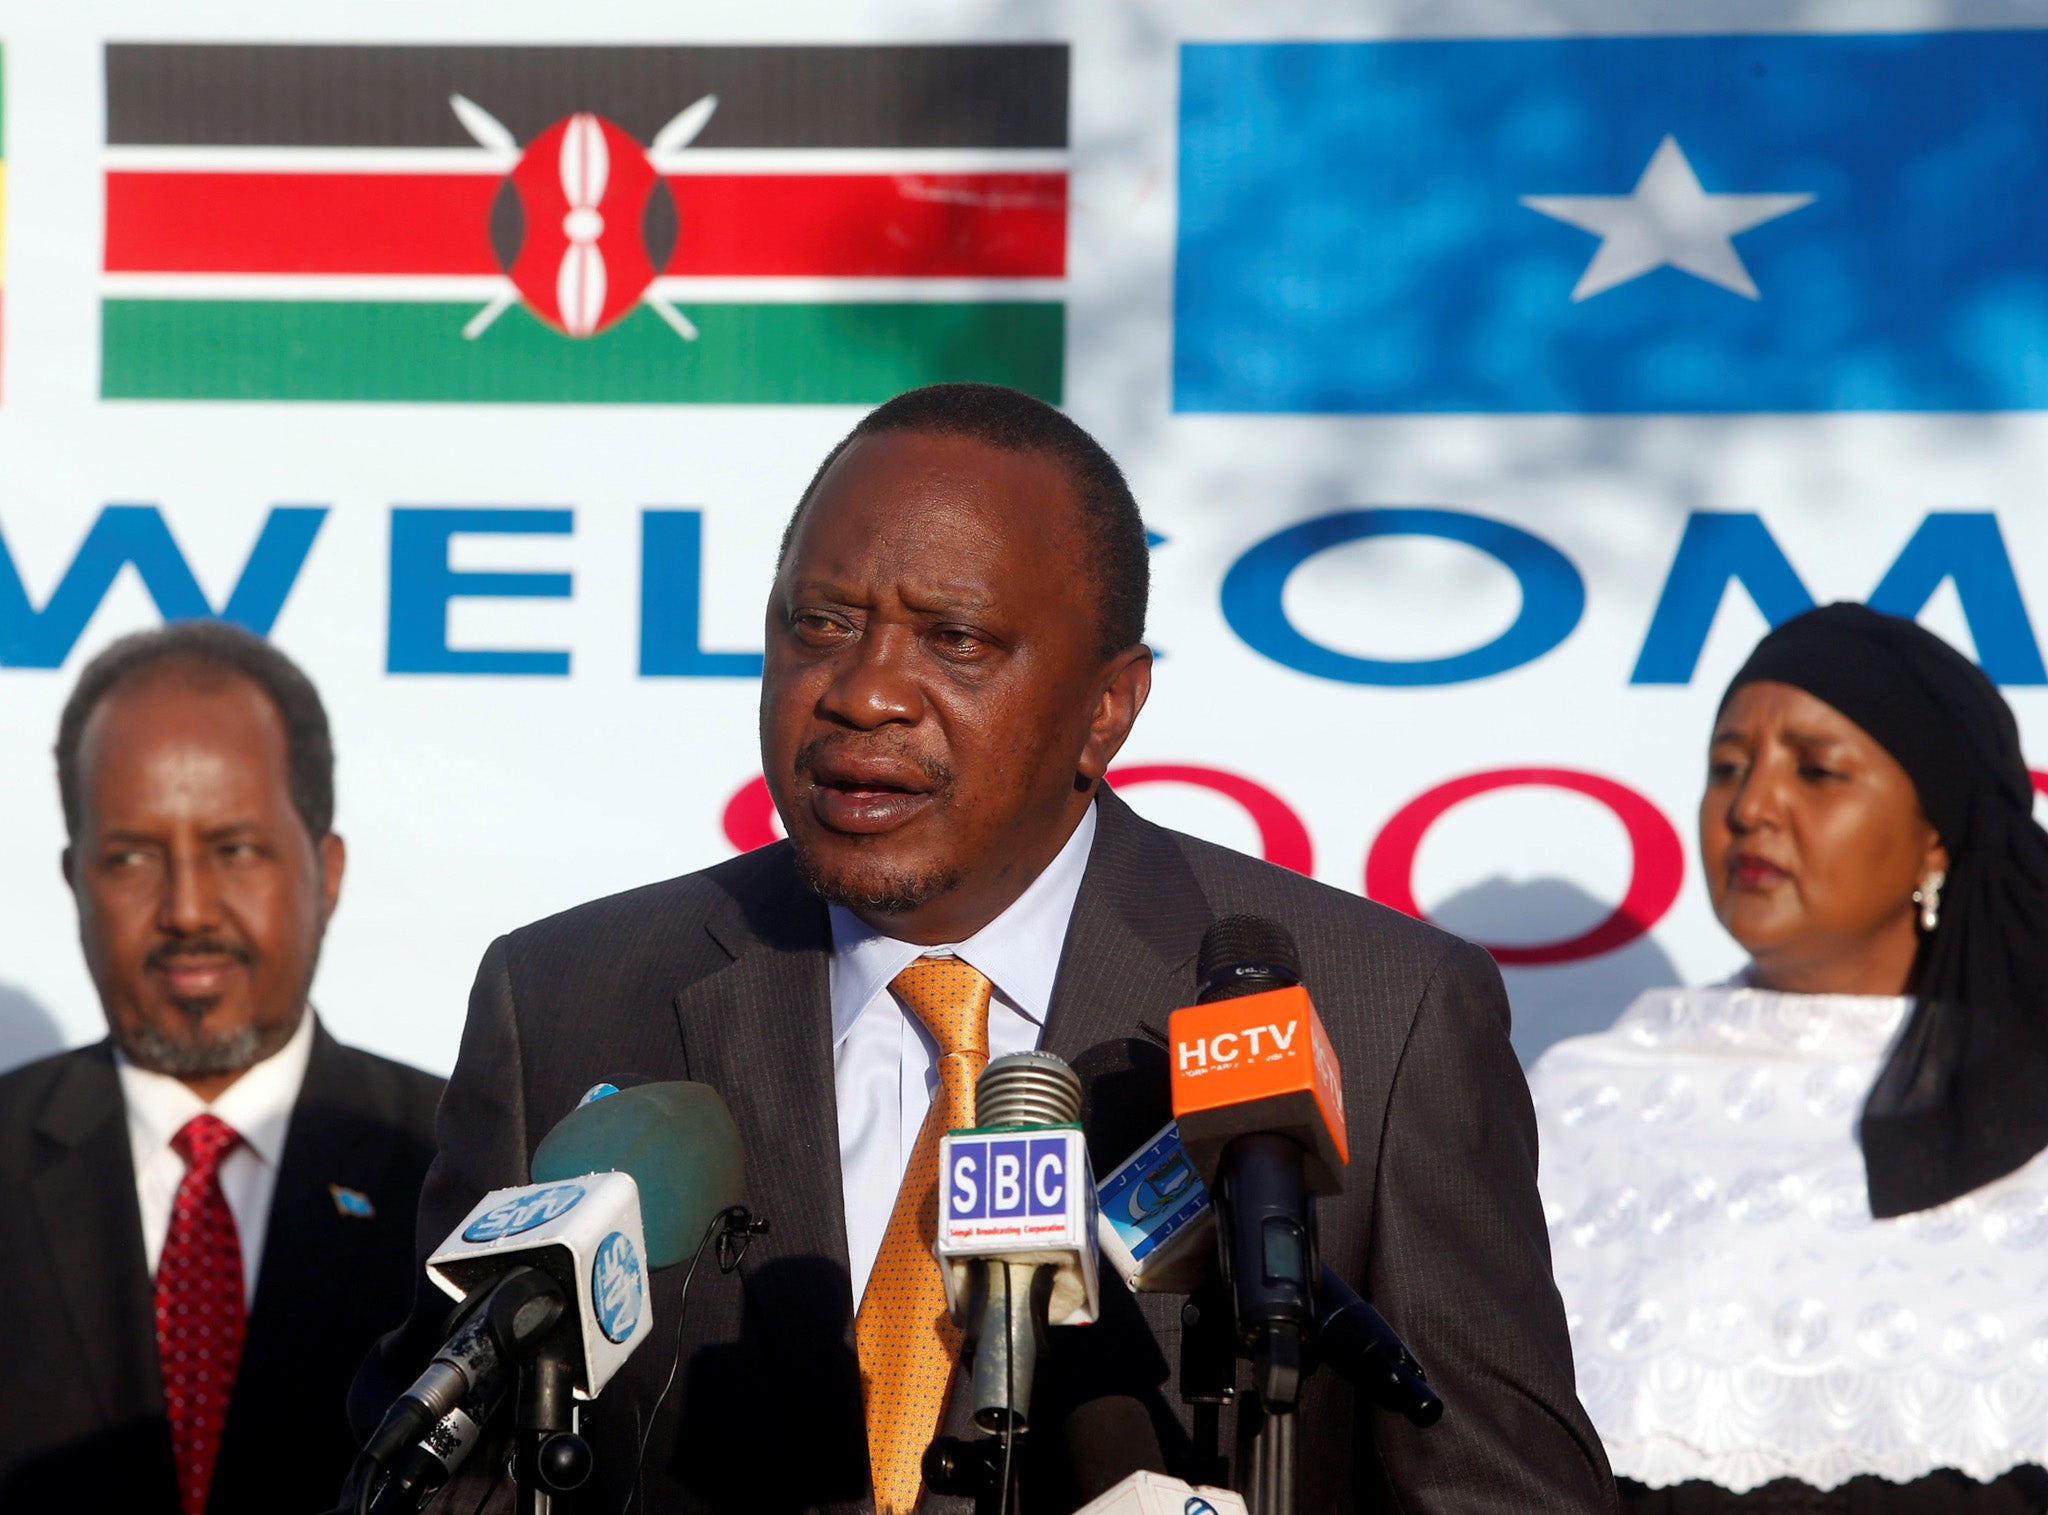 Kenya's President Uhuru Kenyatta addresses a news conference in Mogadishu in Somalia